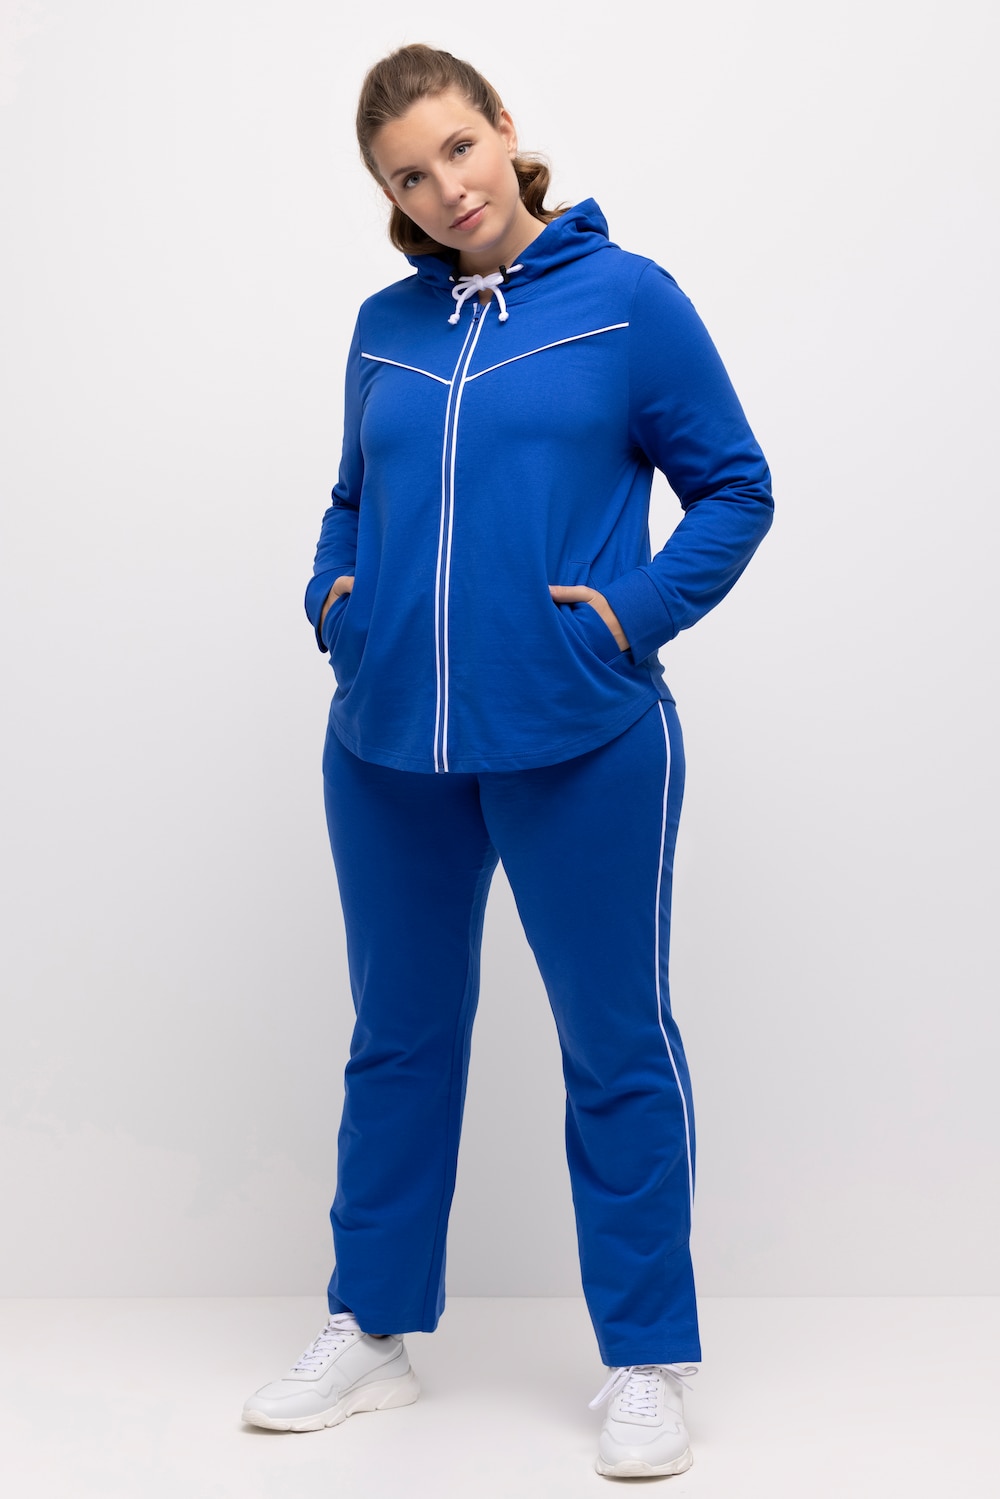 Große Größen Sweatjacke, Damen, blau, Größe: 58/60, Baumwolle/Polyester, Ulla Popken von Ulla Popken